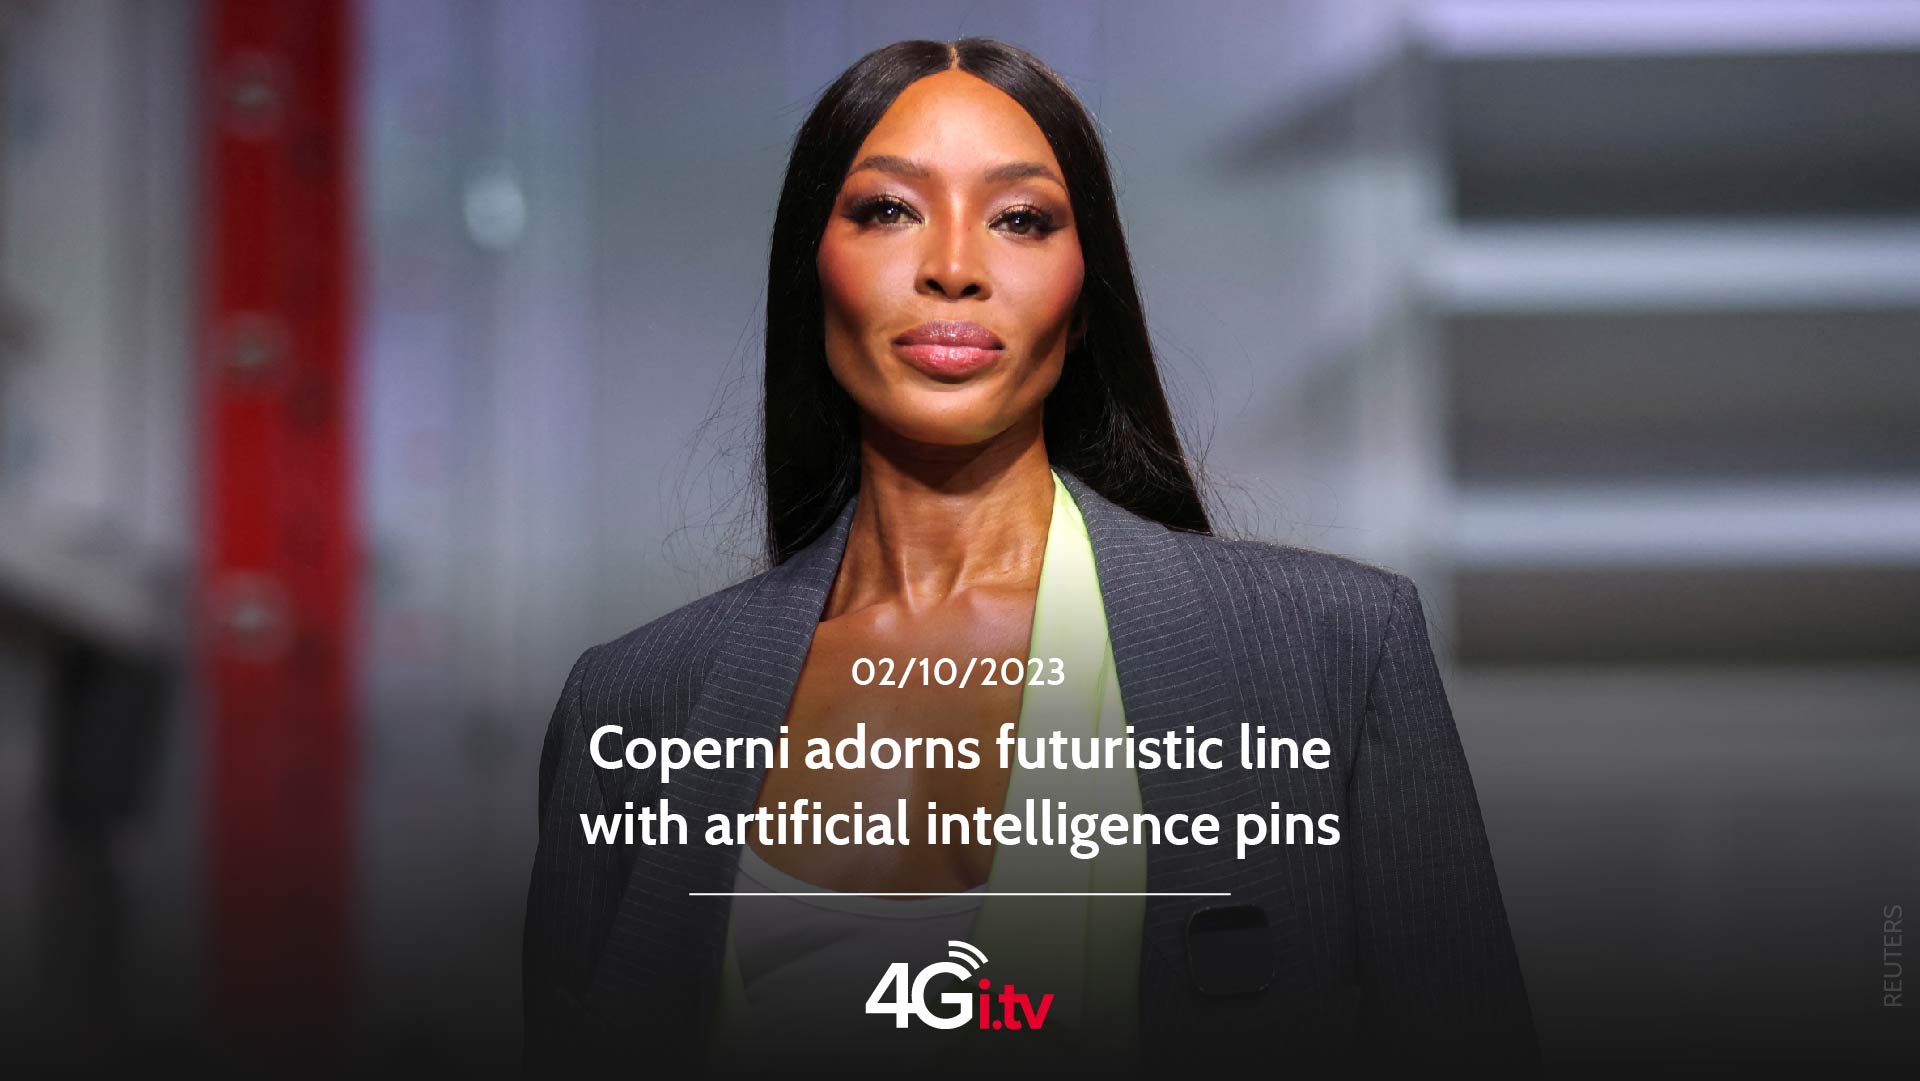 Подробнее о статье Coperni adorns futuristic line with artificial intelligence pins